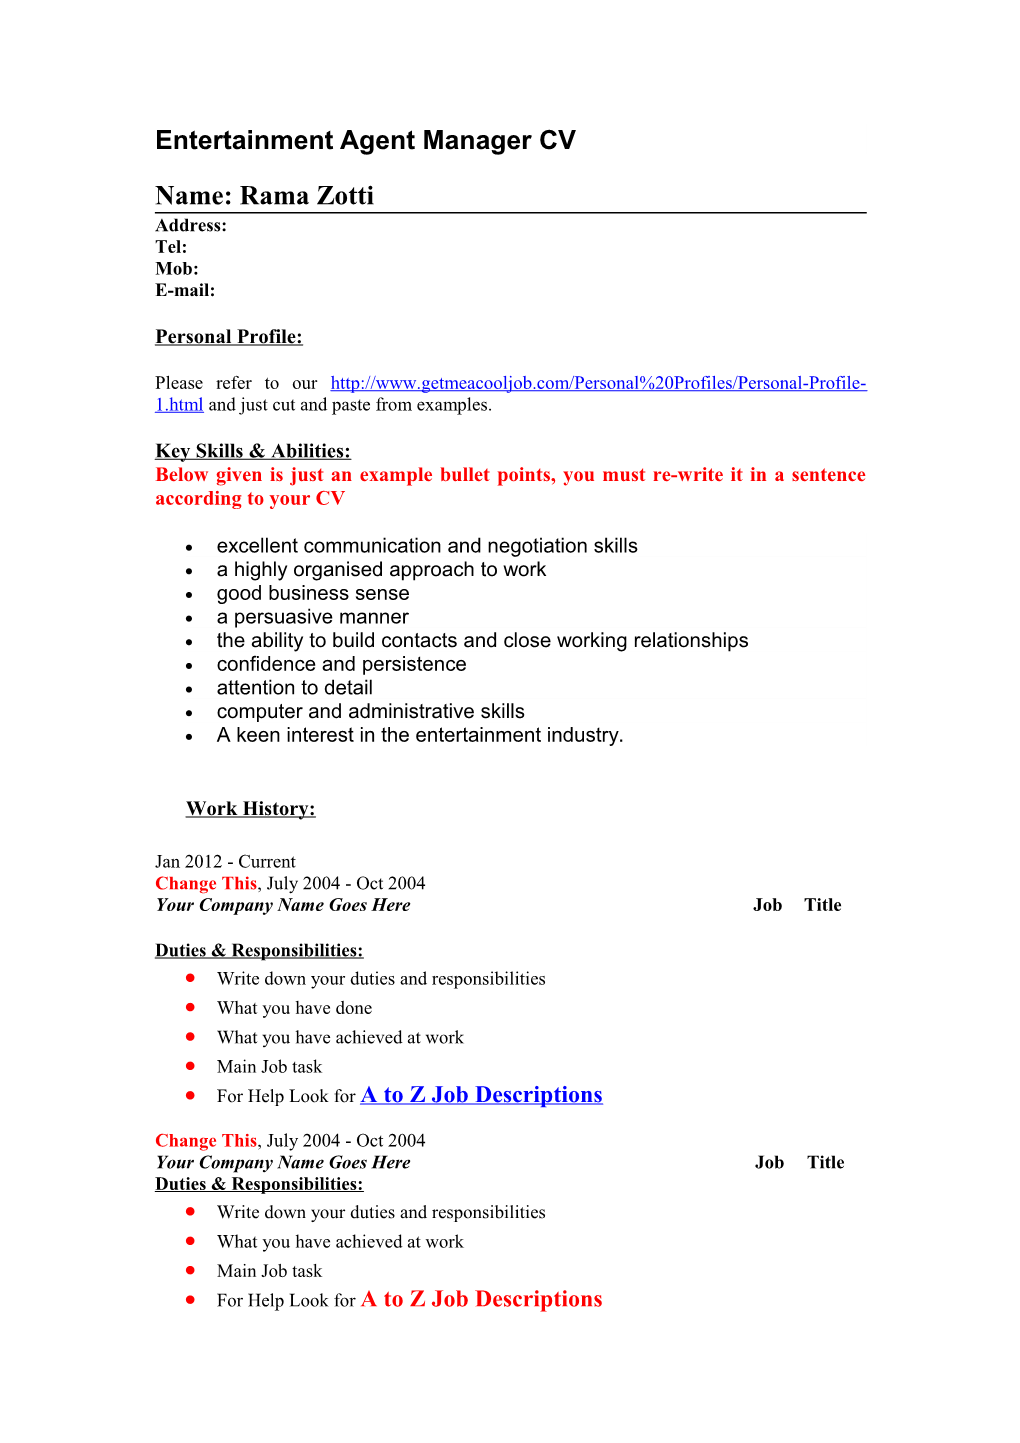 Entertainment Agent/ Manager Job Descriptions